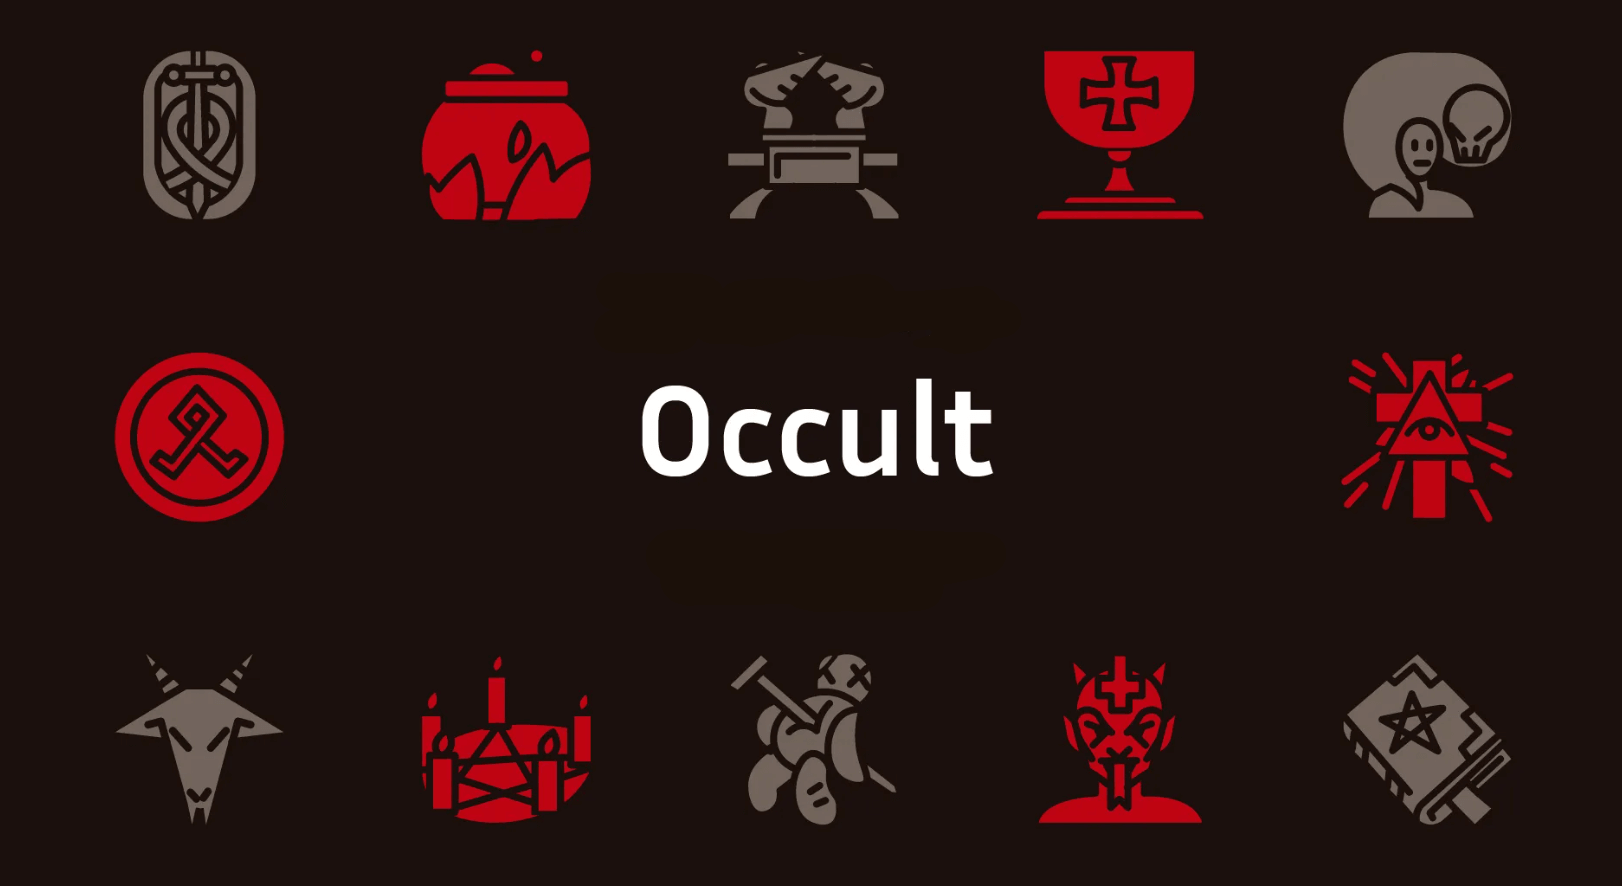 Occult Horror Symbols